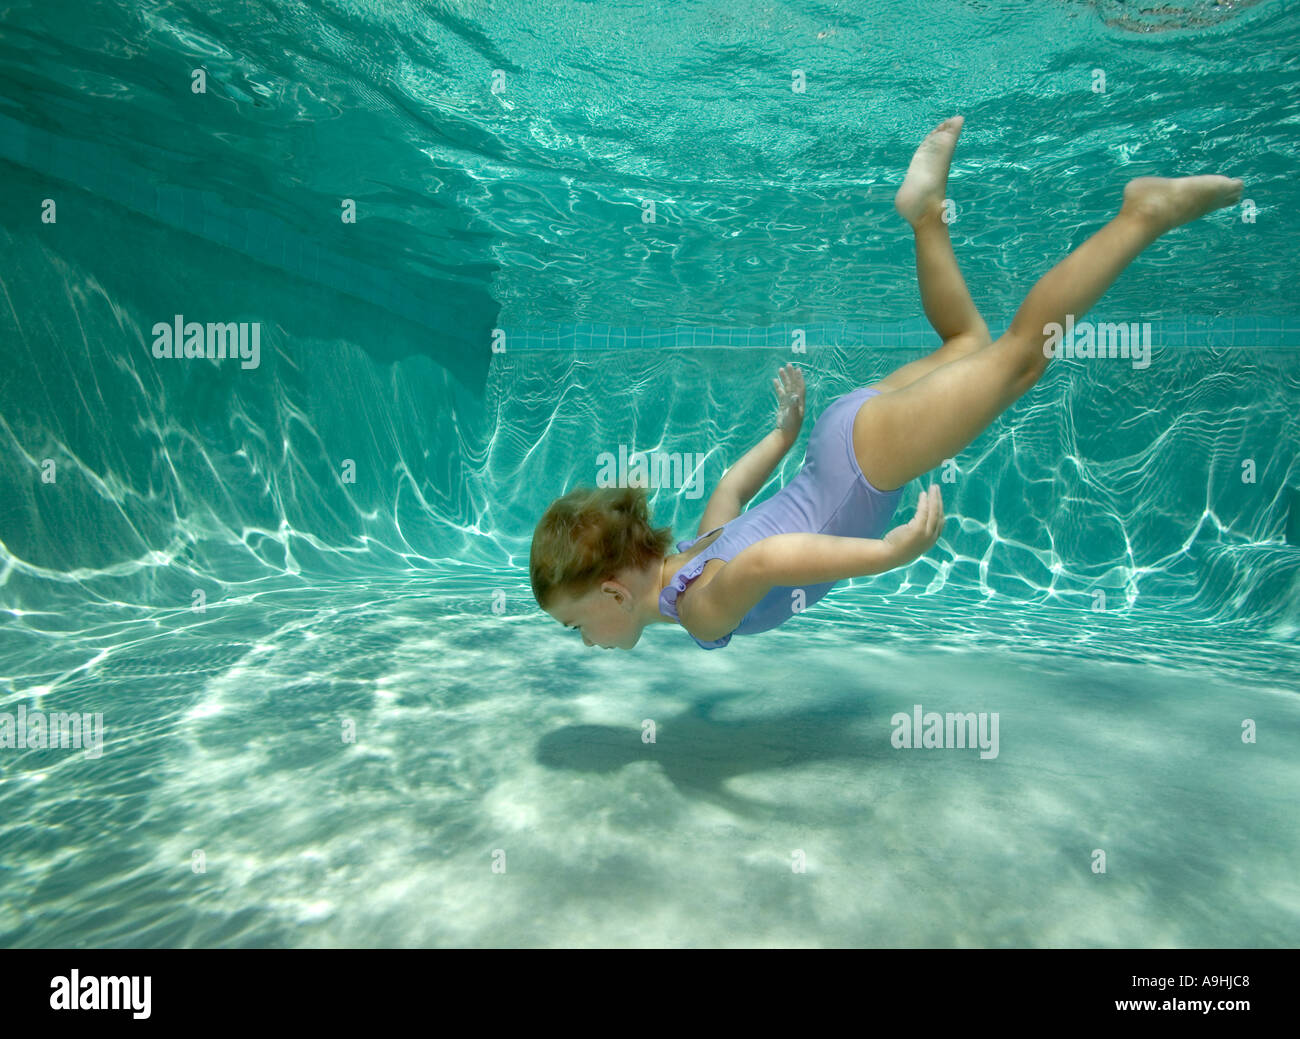 Joven submarina de buceo en piscina Foto de stock